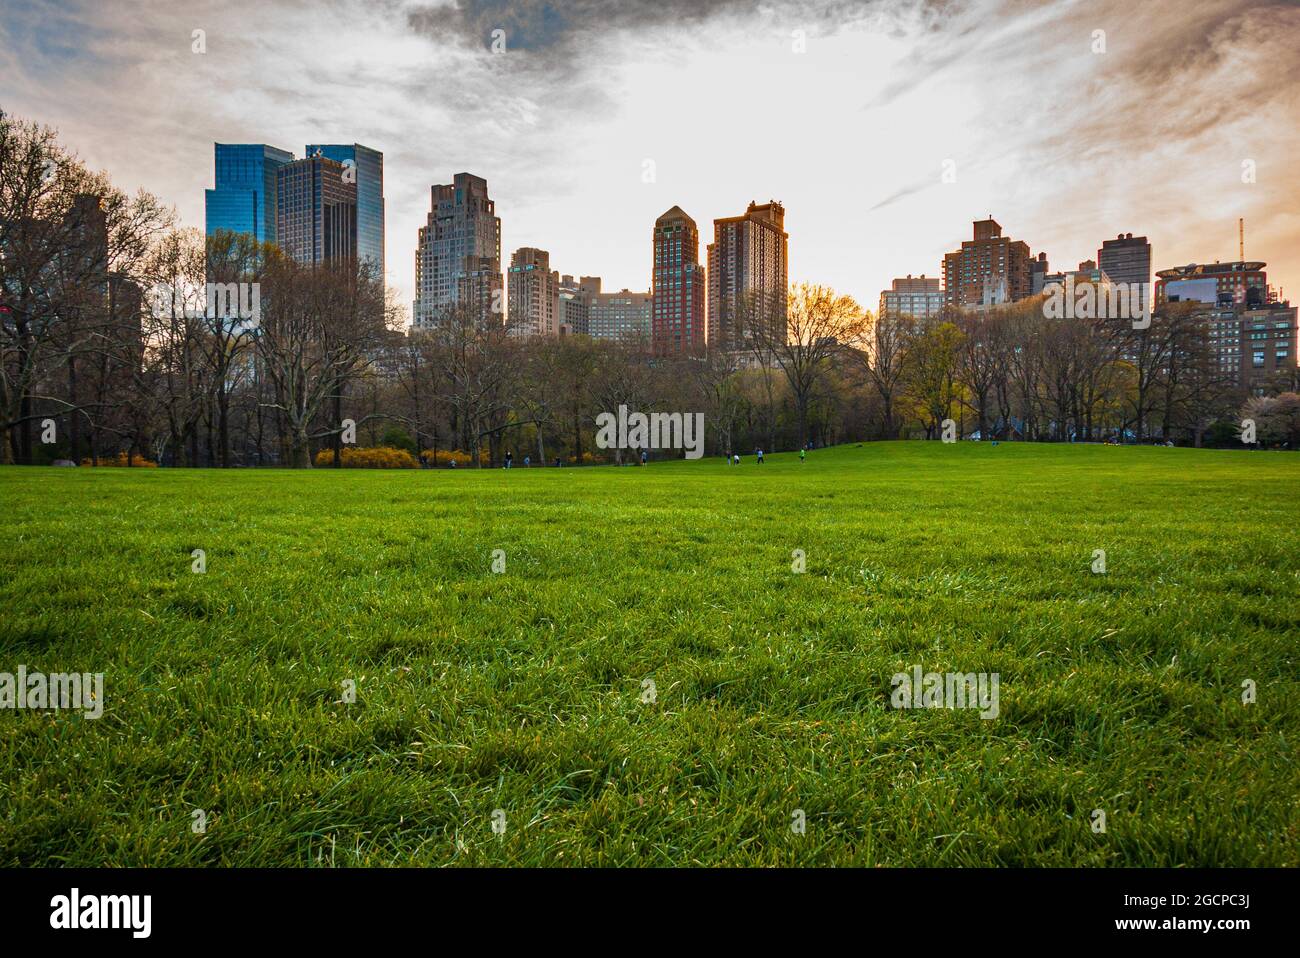 The Sheep Meadow, Central Park, New York City, NY, USA. Stock Photo